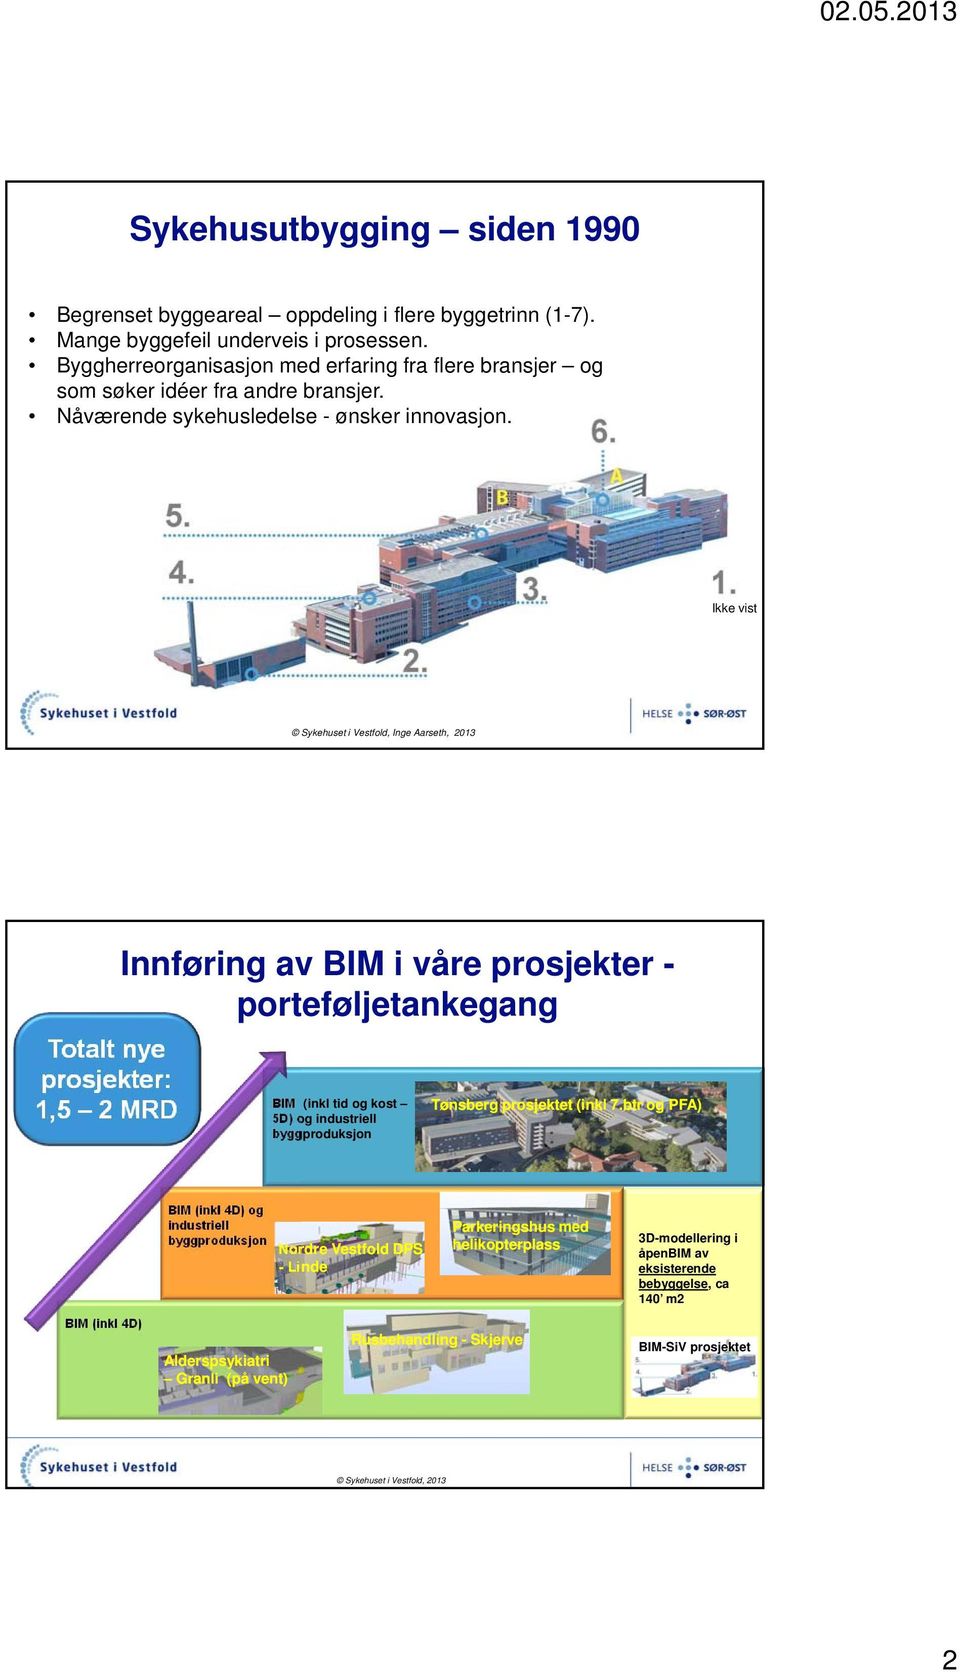 Ikke vist Totalt nye prosjekter: 1,5 2 MRD Innføring av BIM i våre prosjekter - porteføljetankegang BIM (inkl tid og kost 5D) og industriell byggproduksjon Tønsberg prosjektet (inkl 7.